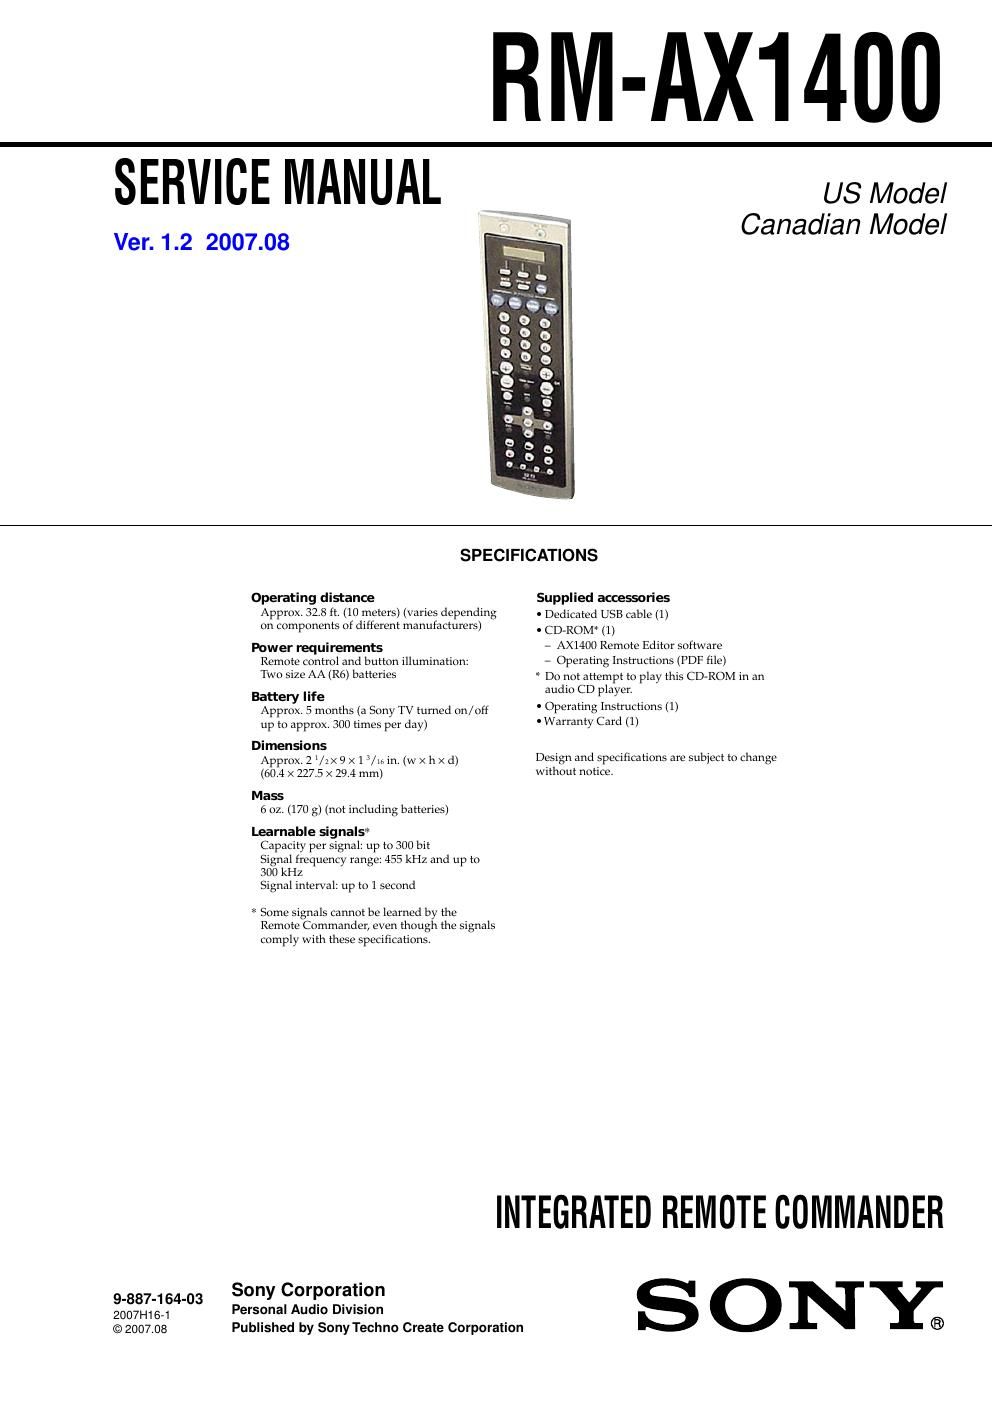 sony rm ax 1400 service manual